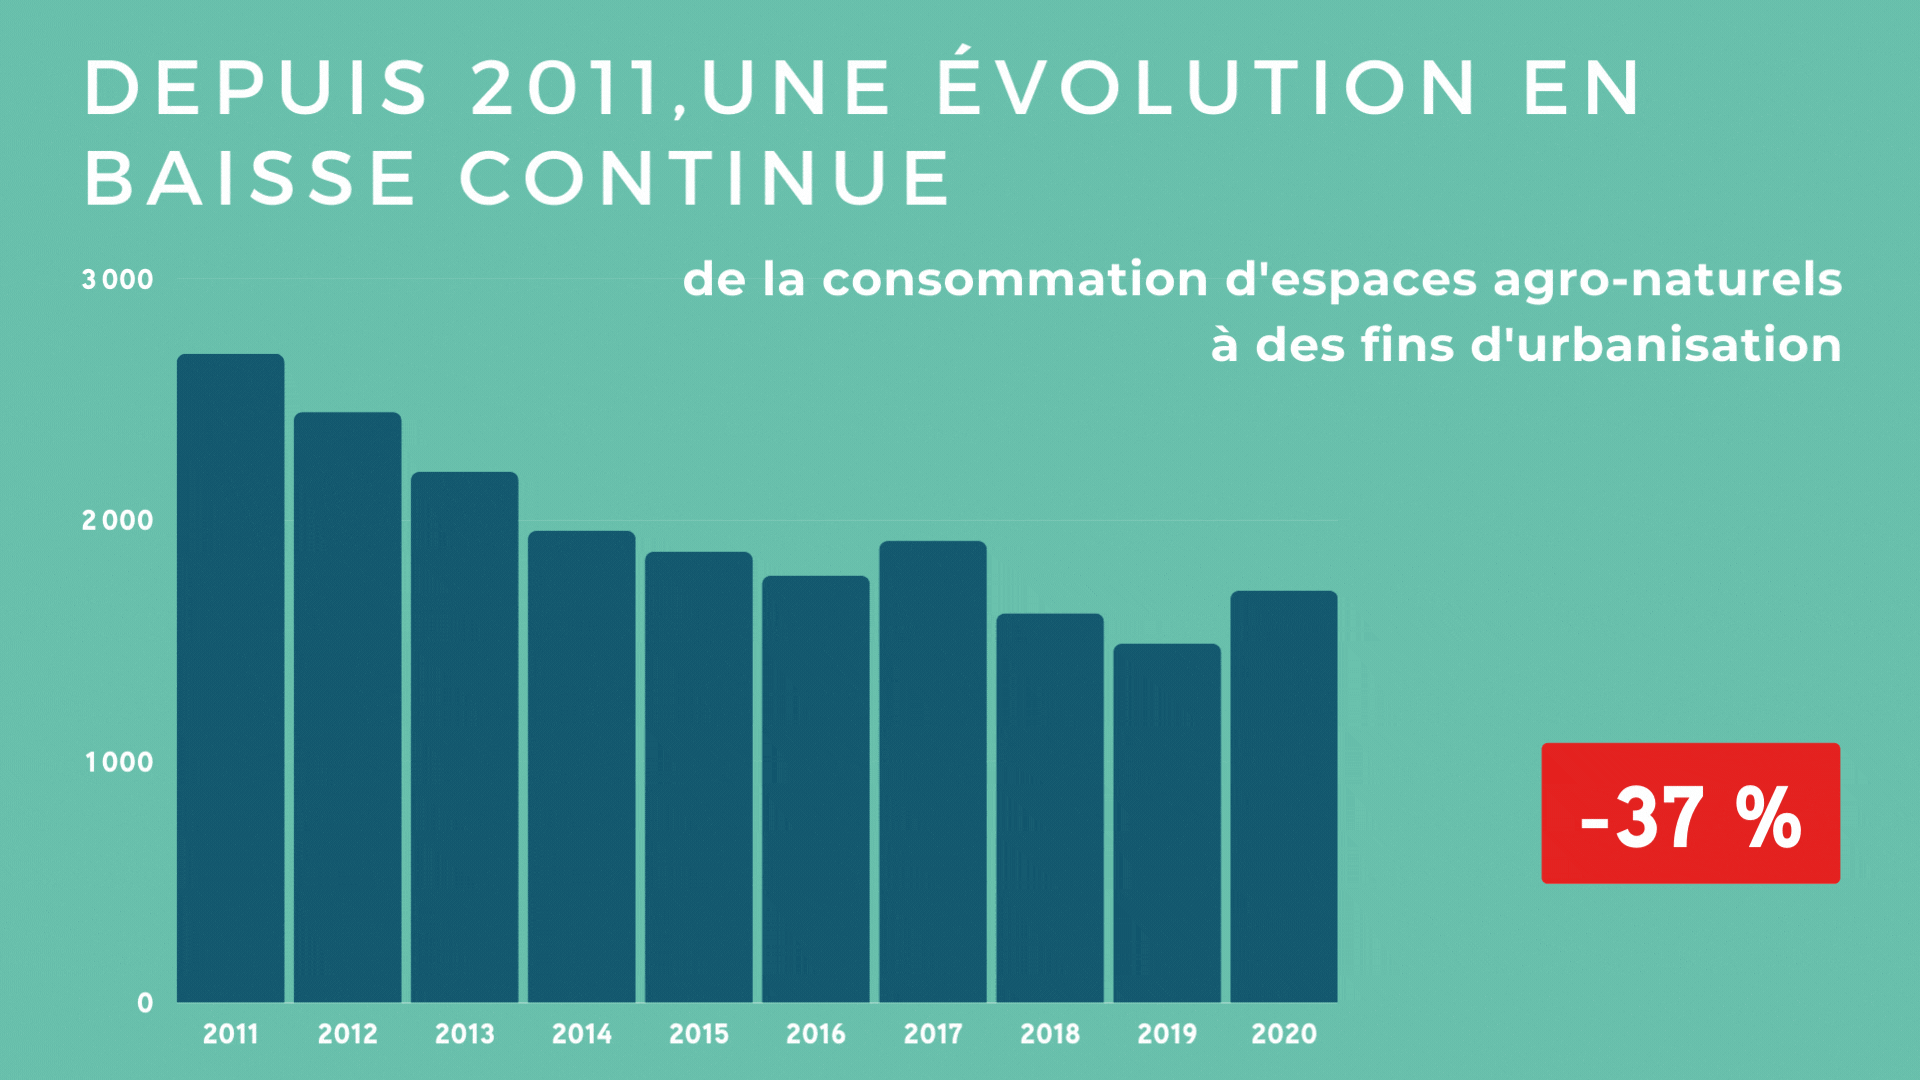 Représentation de la tendance à la baisse de la consommation d'espaces dans l'aire métropolitaine de Toulouse de 2011 à 2020